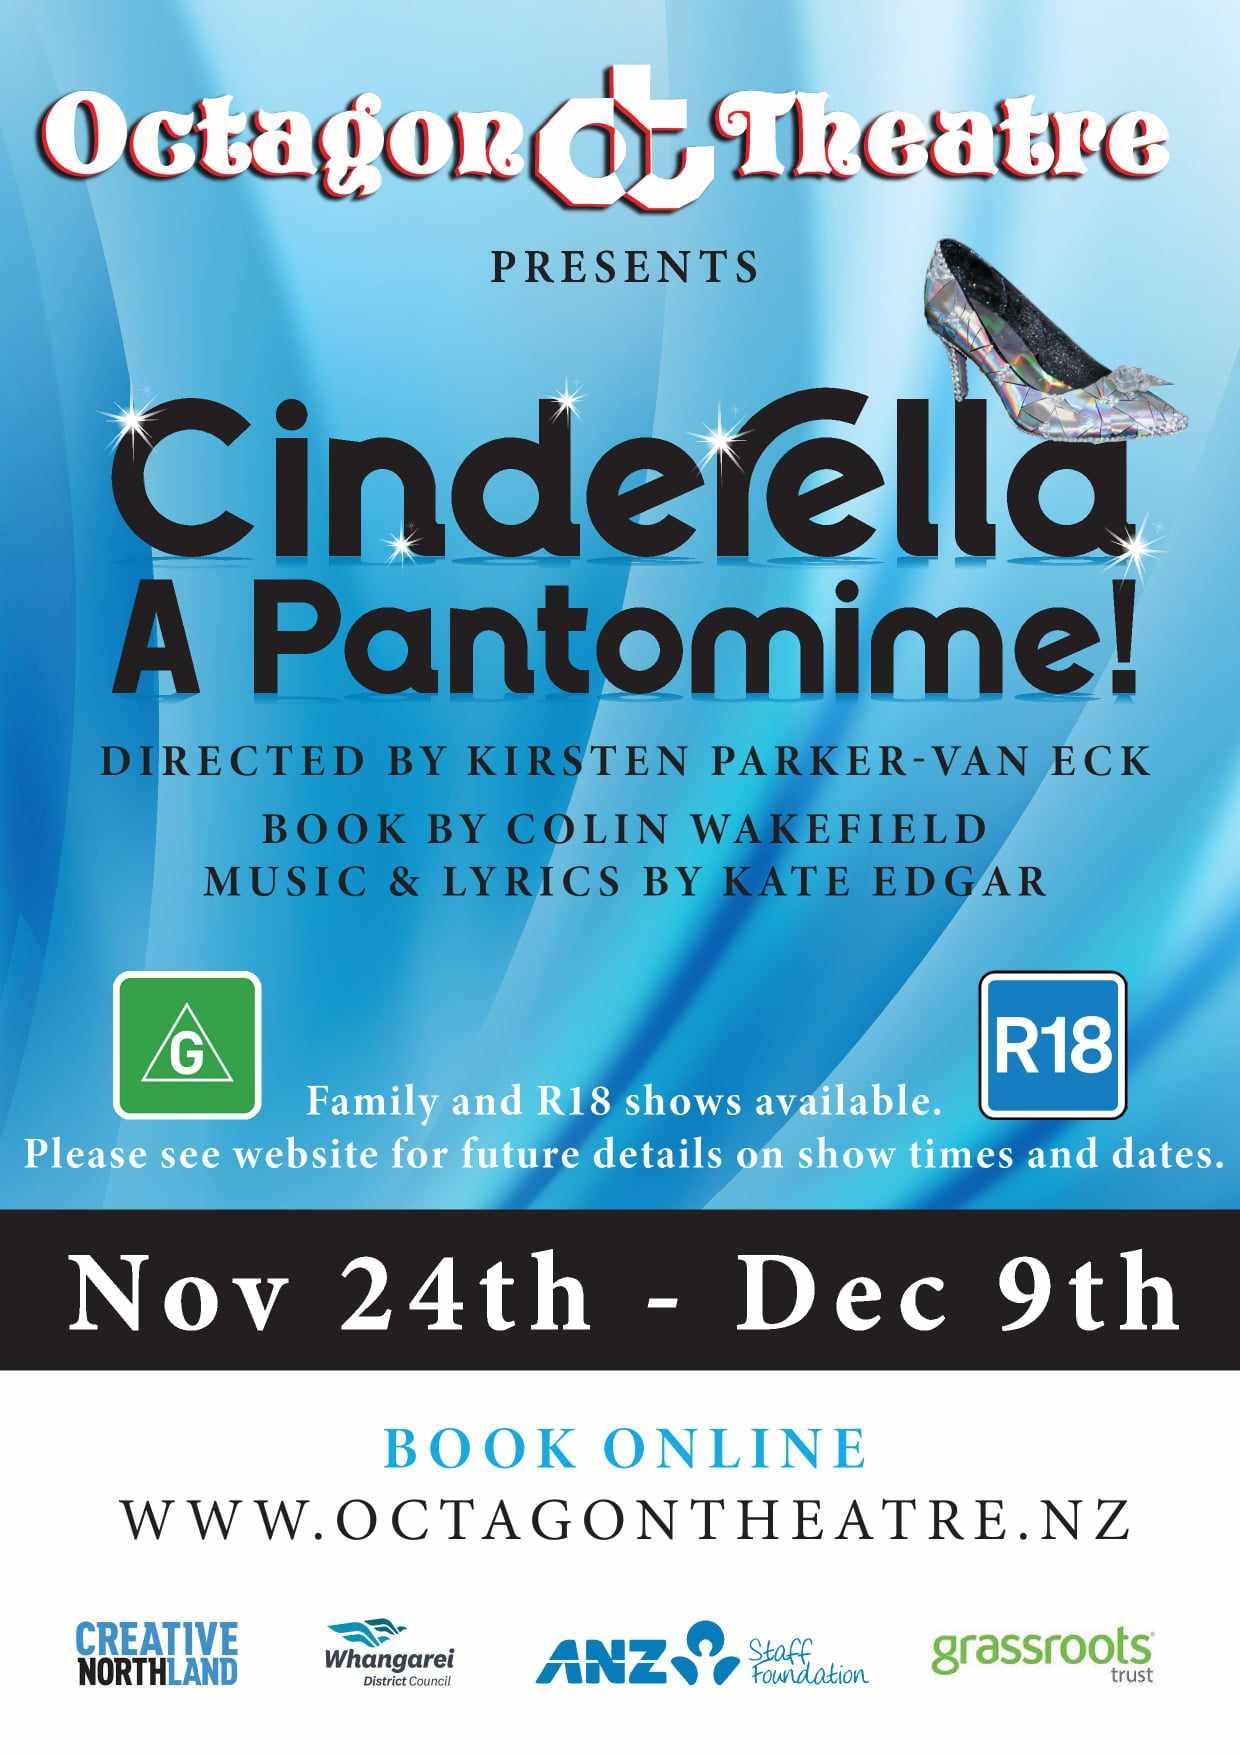 Cinderella A Pantomime!